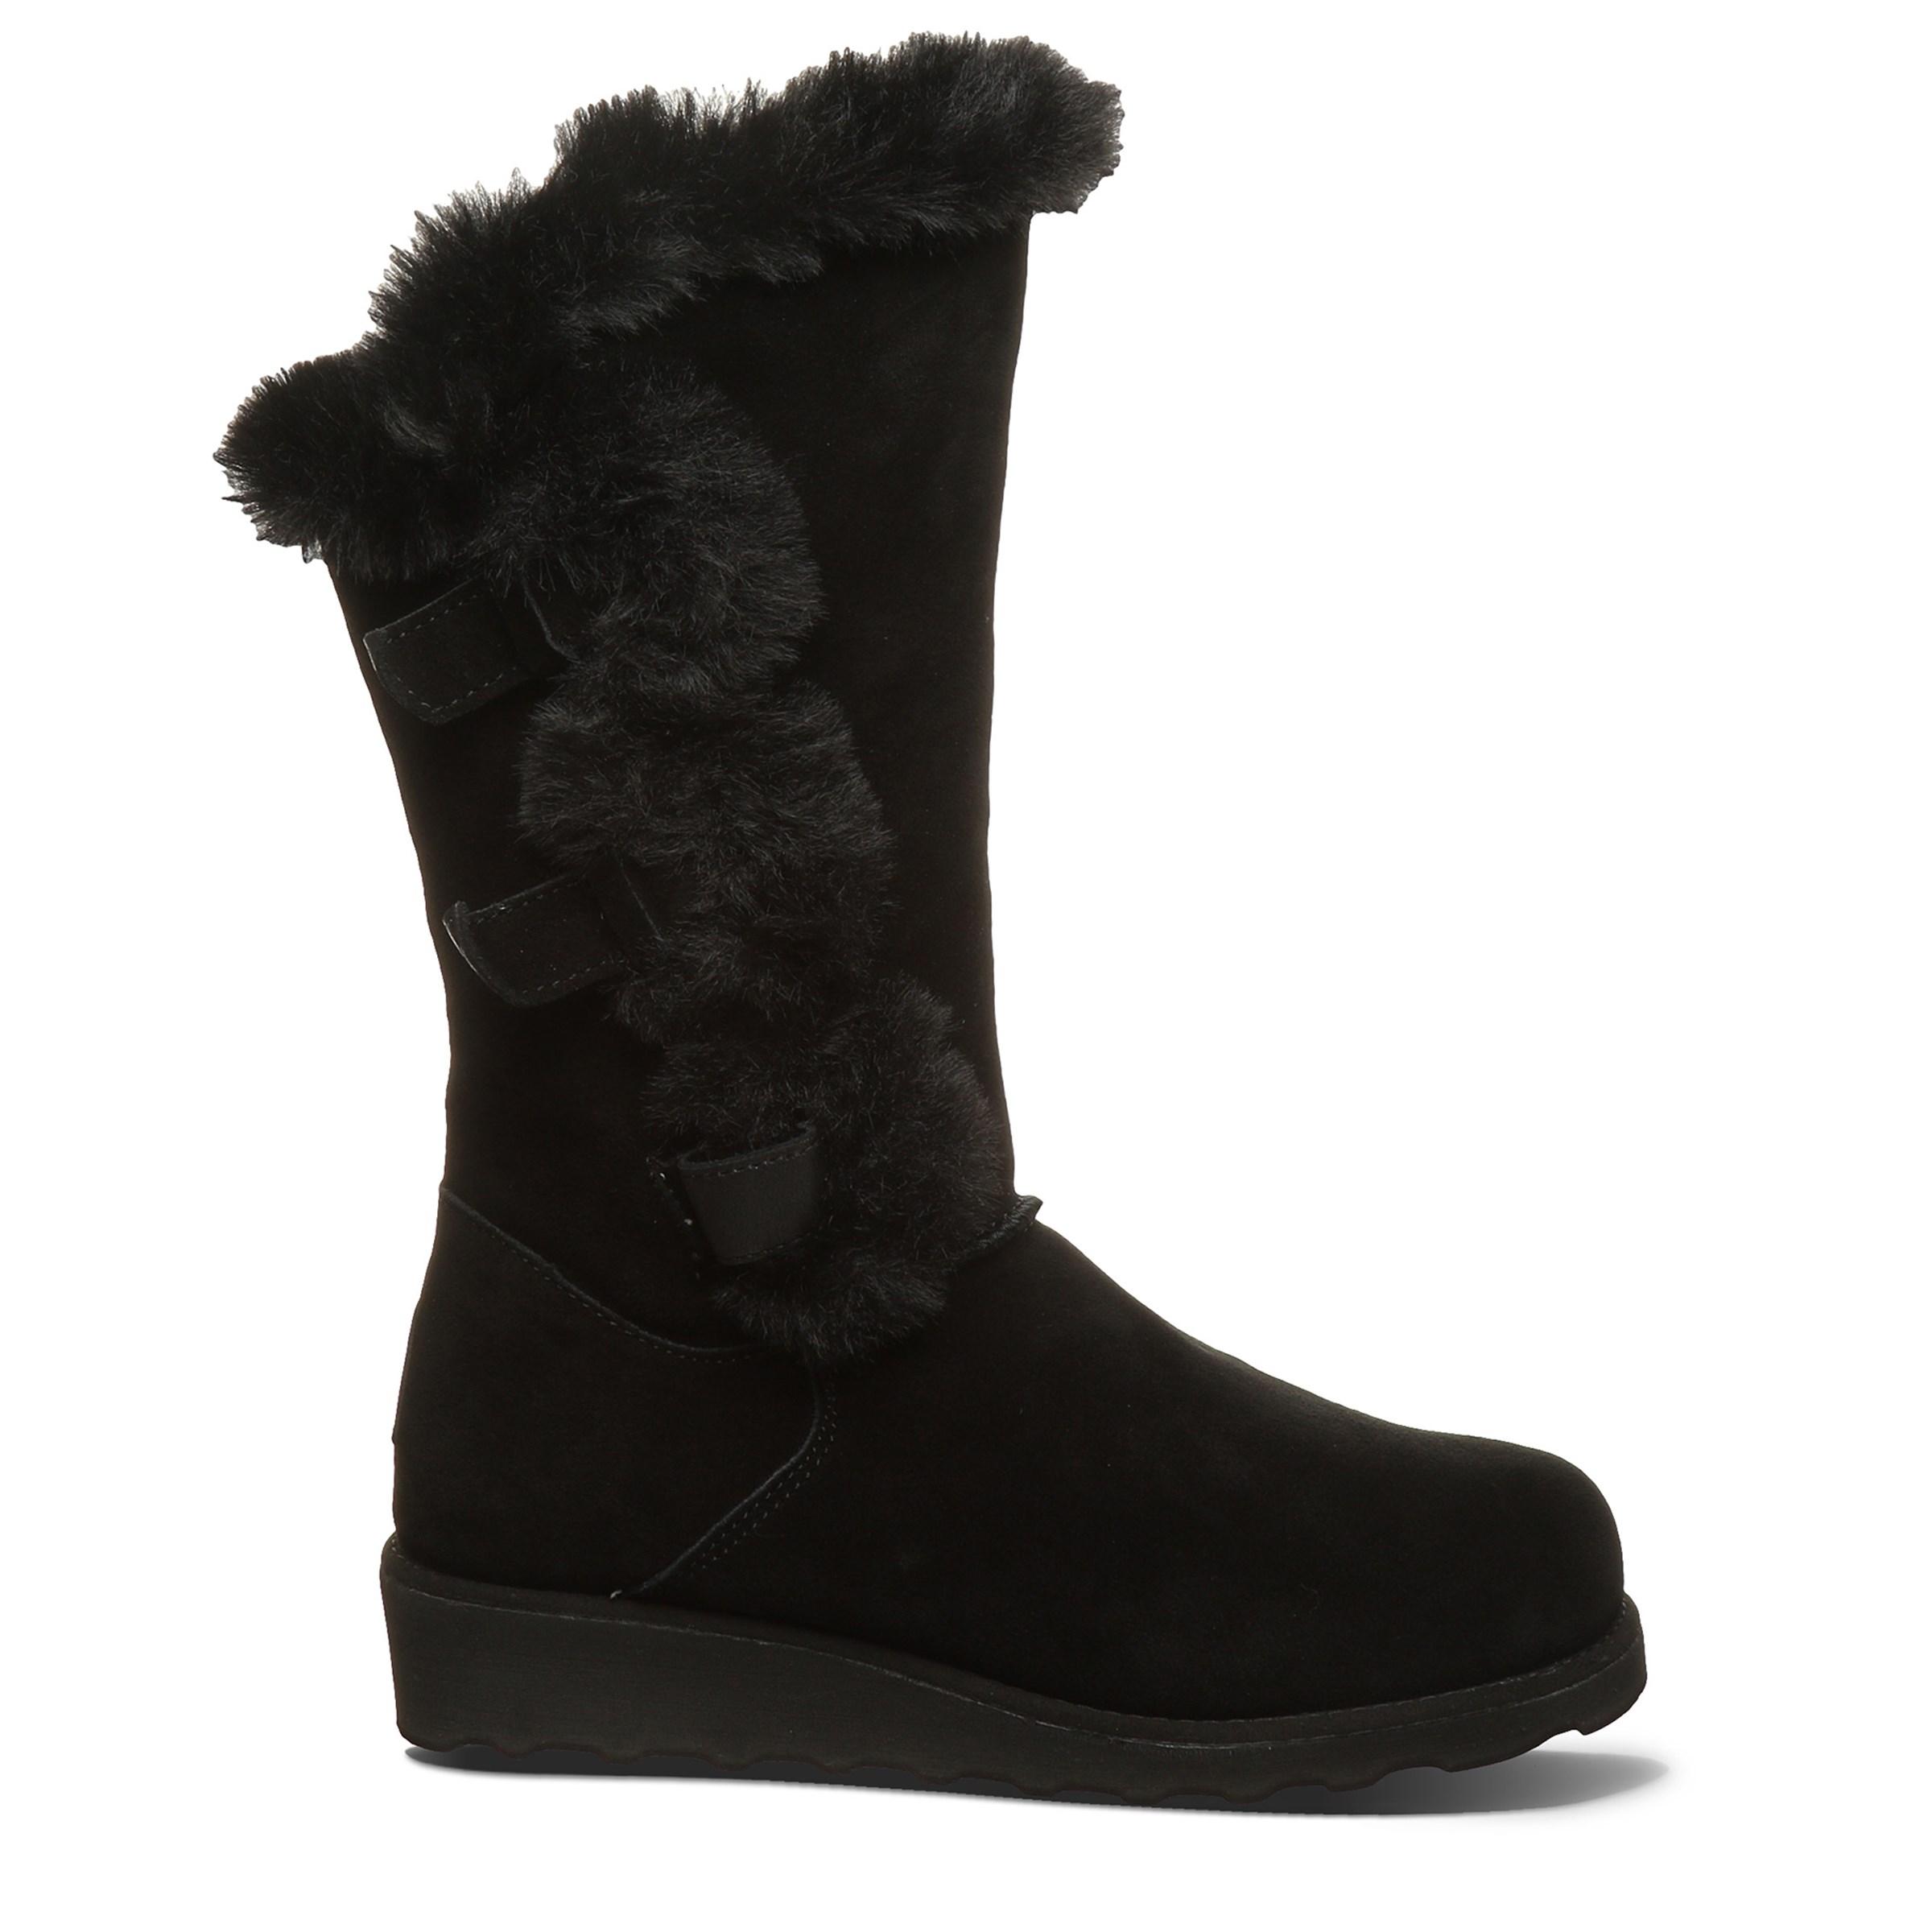 BEARPAW Genevieve Winter Boots in Black ii (Black) - Lyst